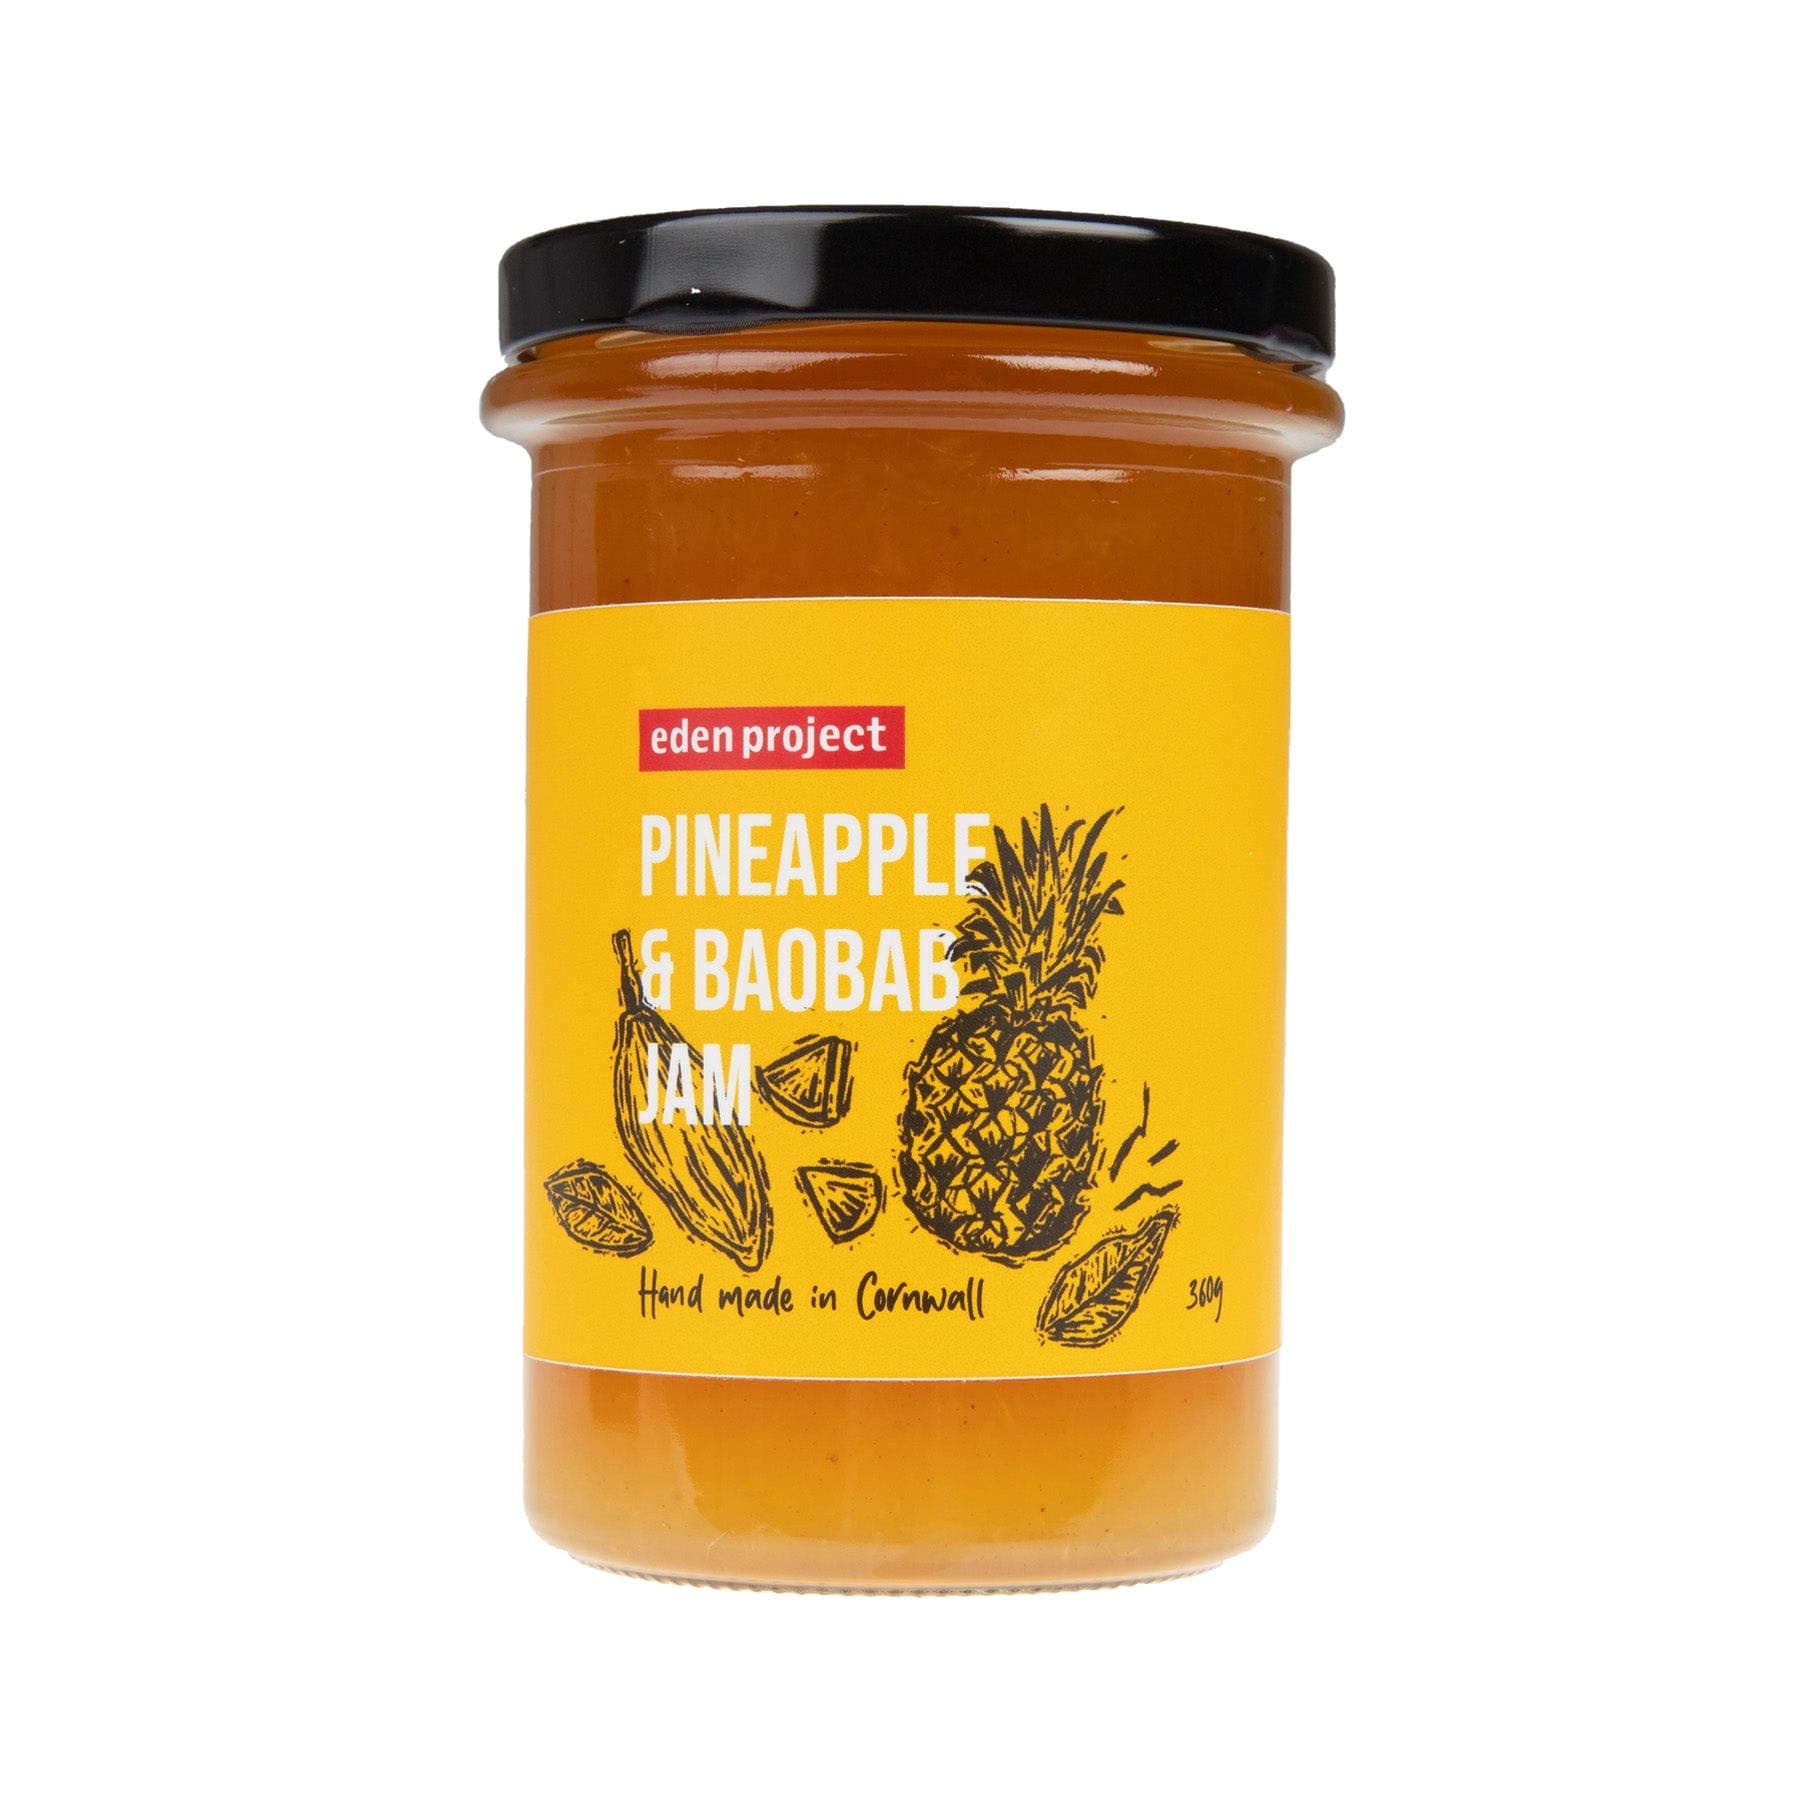 Pineapple & baobab jam 360g